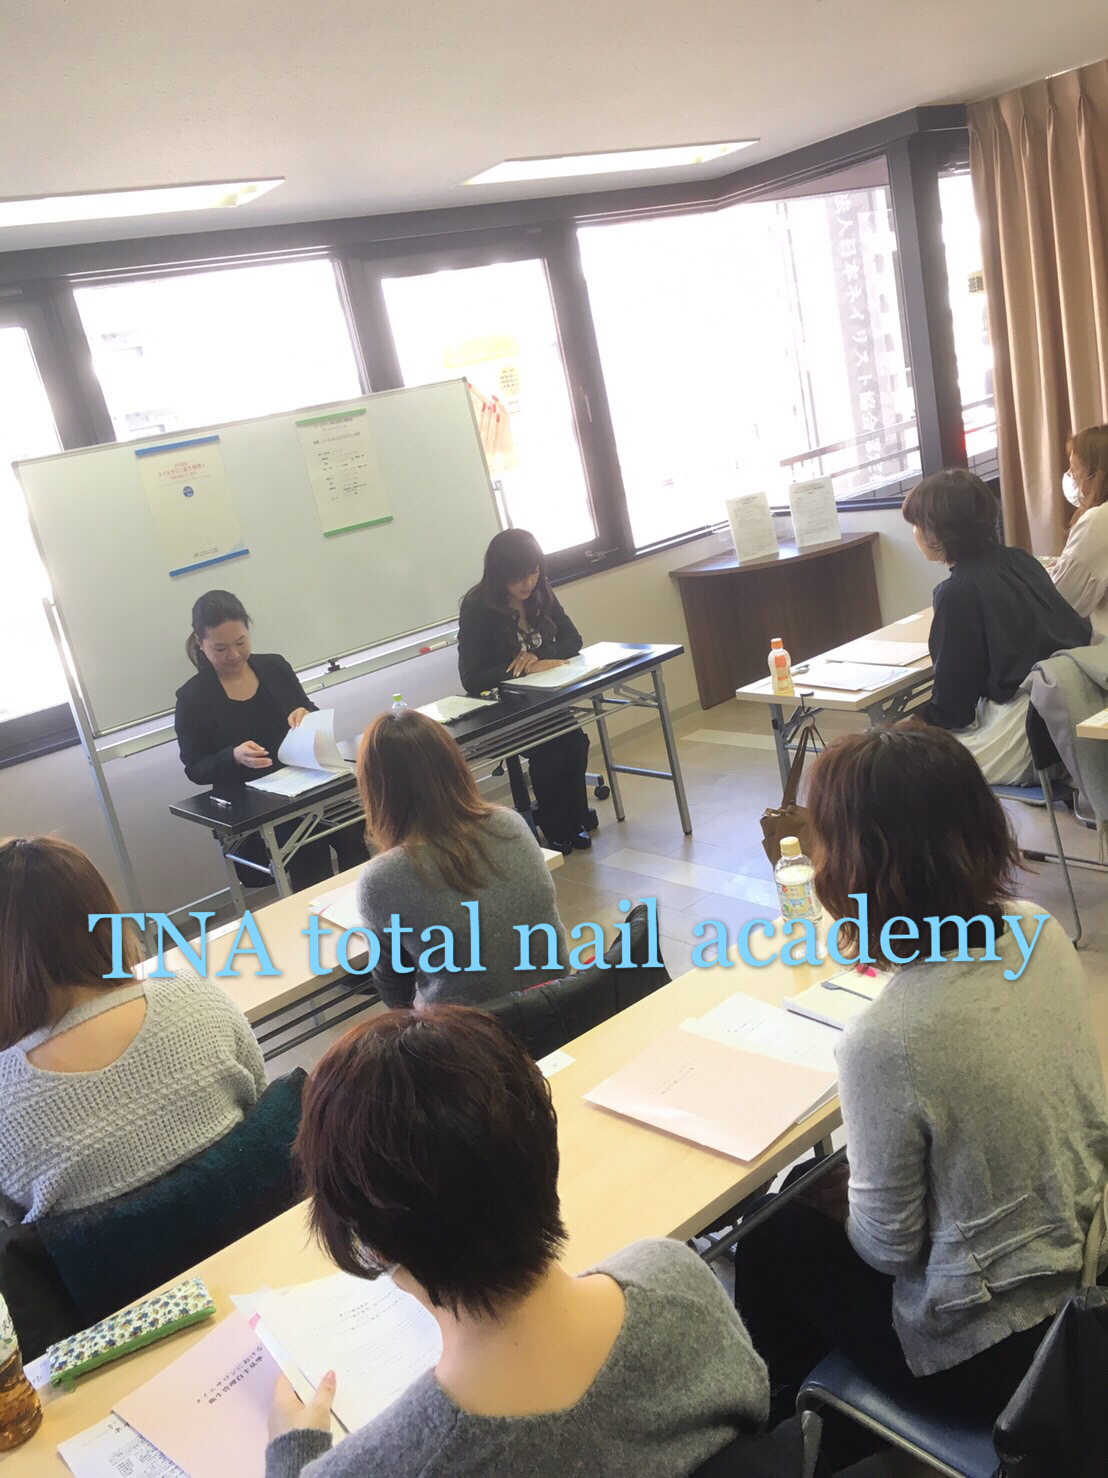 東京本校 5 16ネイルサロン衛生管理士資格取得講習会のご案内 Tna